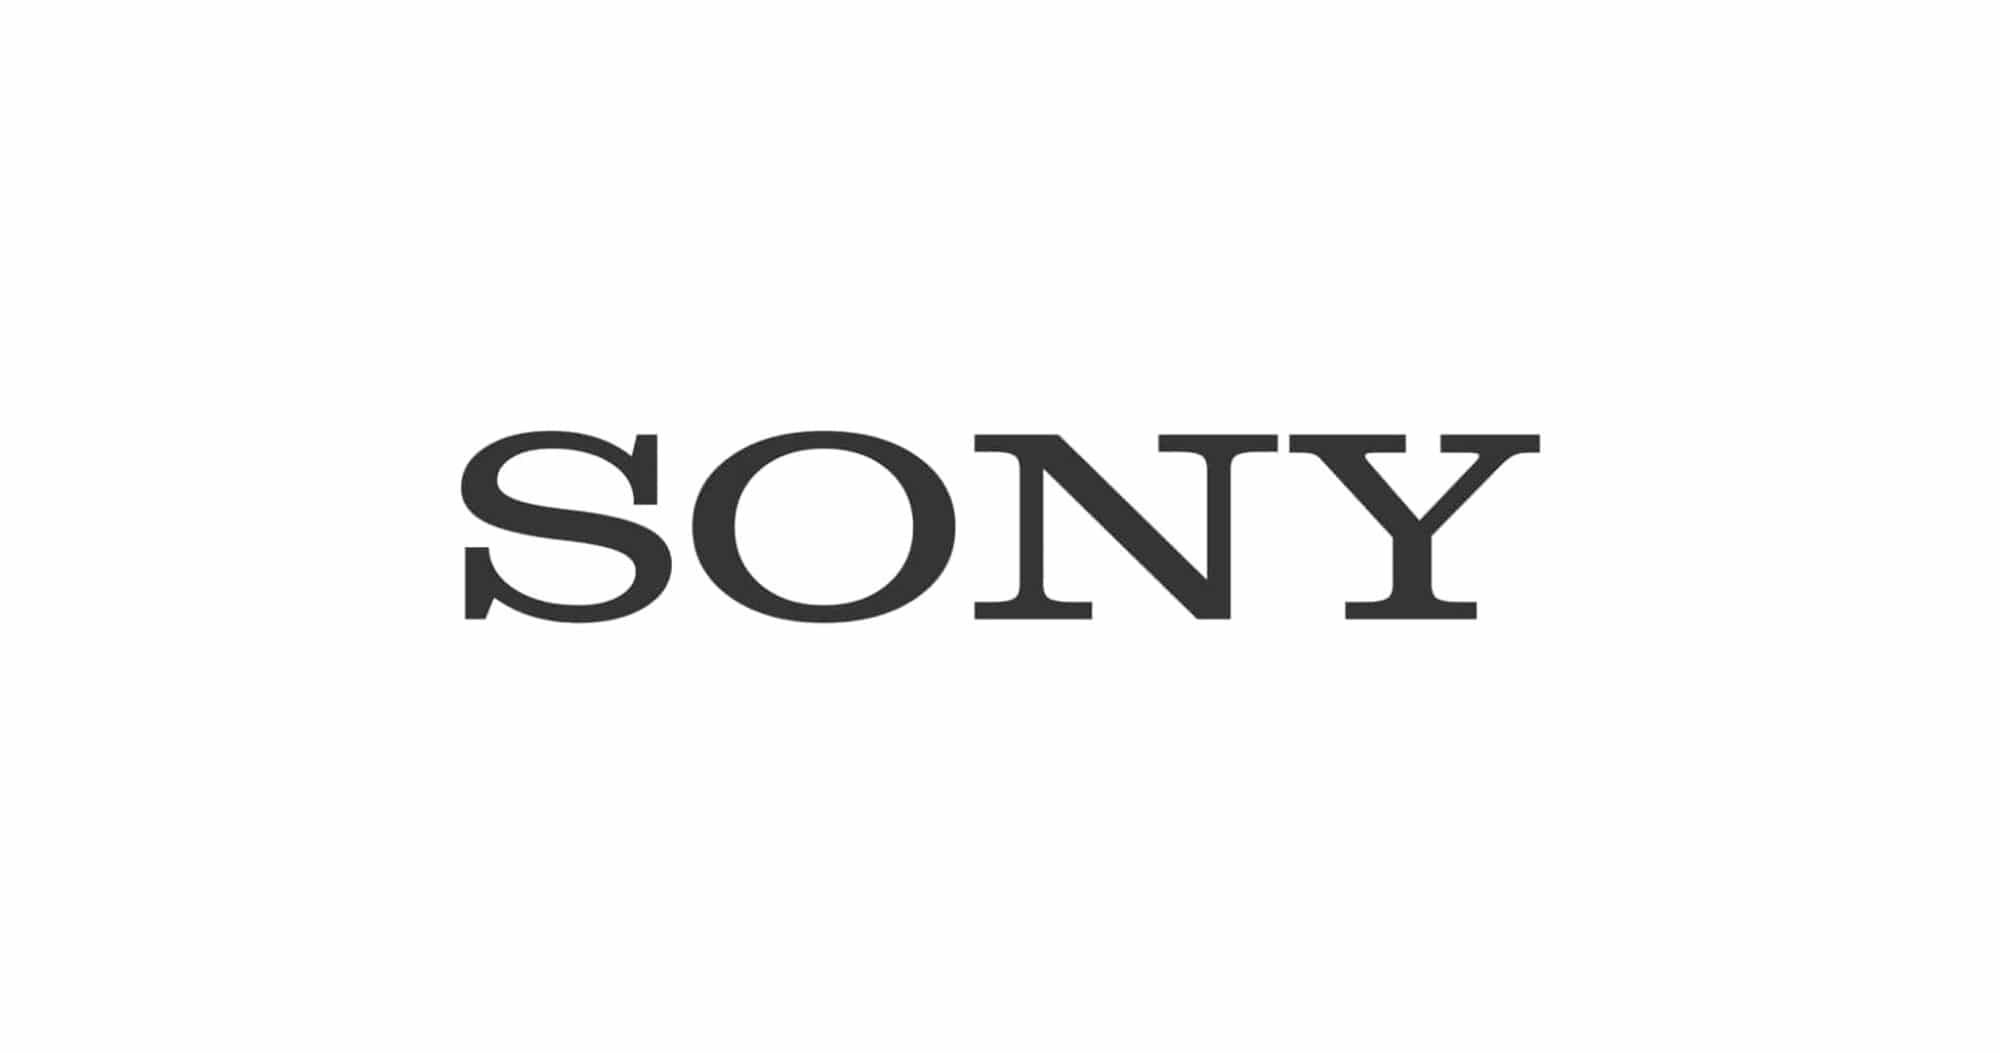 Sony ประกาศยุบรวมธุรกิจกล้อง ภาพ เสียง และมือถือ เป็นแผนกเดียวกัน มีผล 1 เม.ย. 62 1